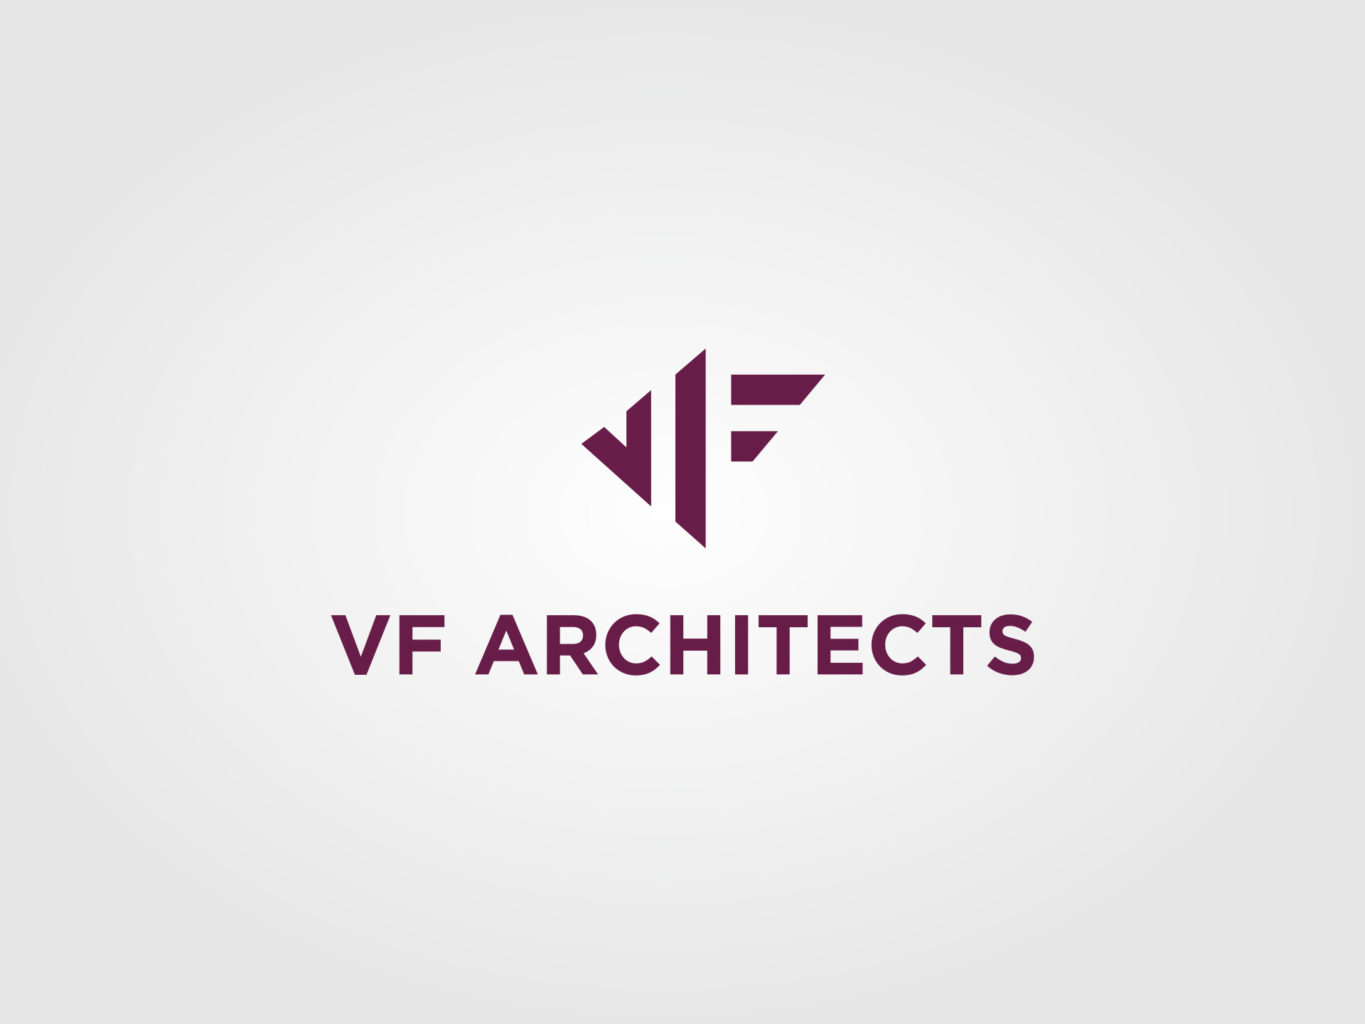 vf architects logo by fiftyeggz